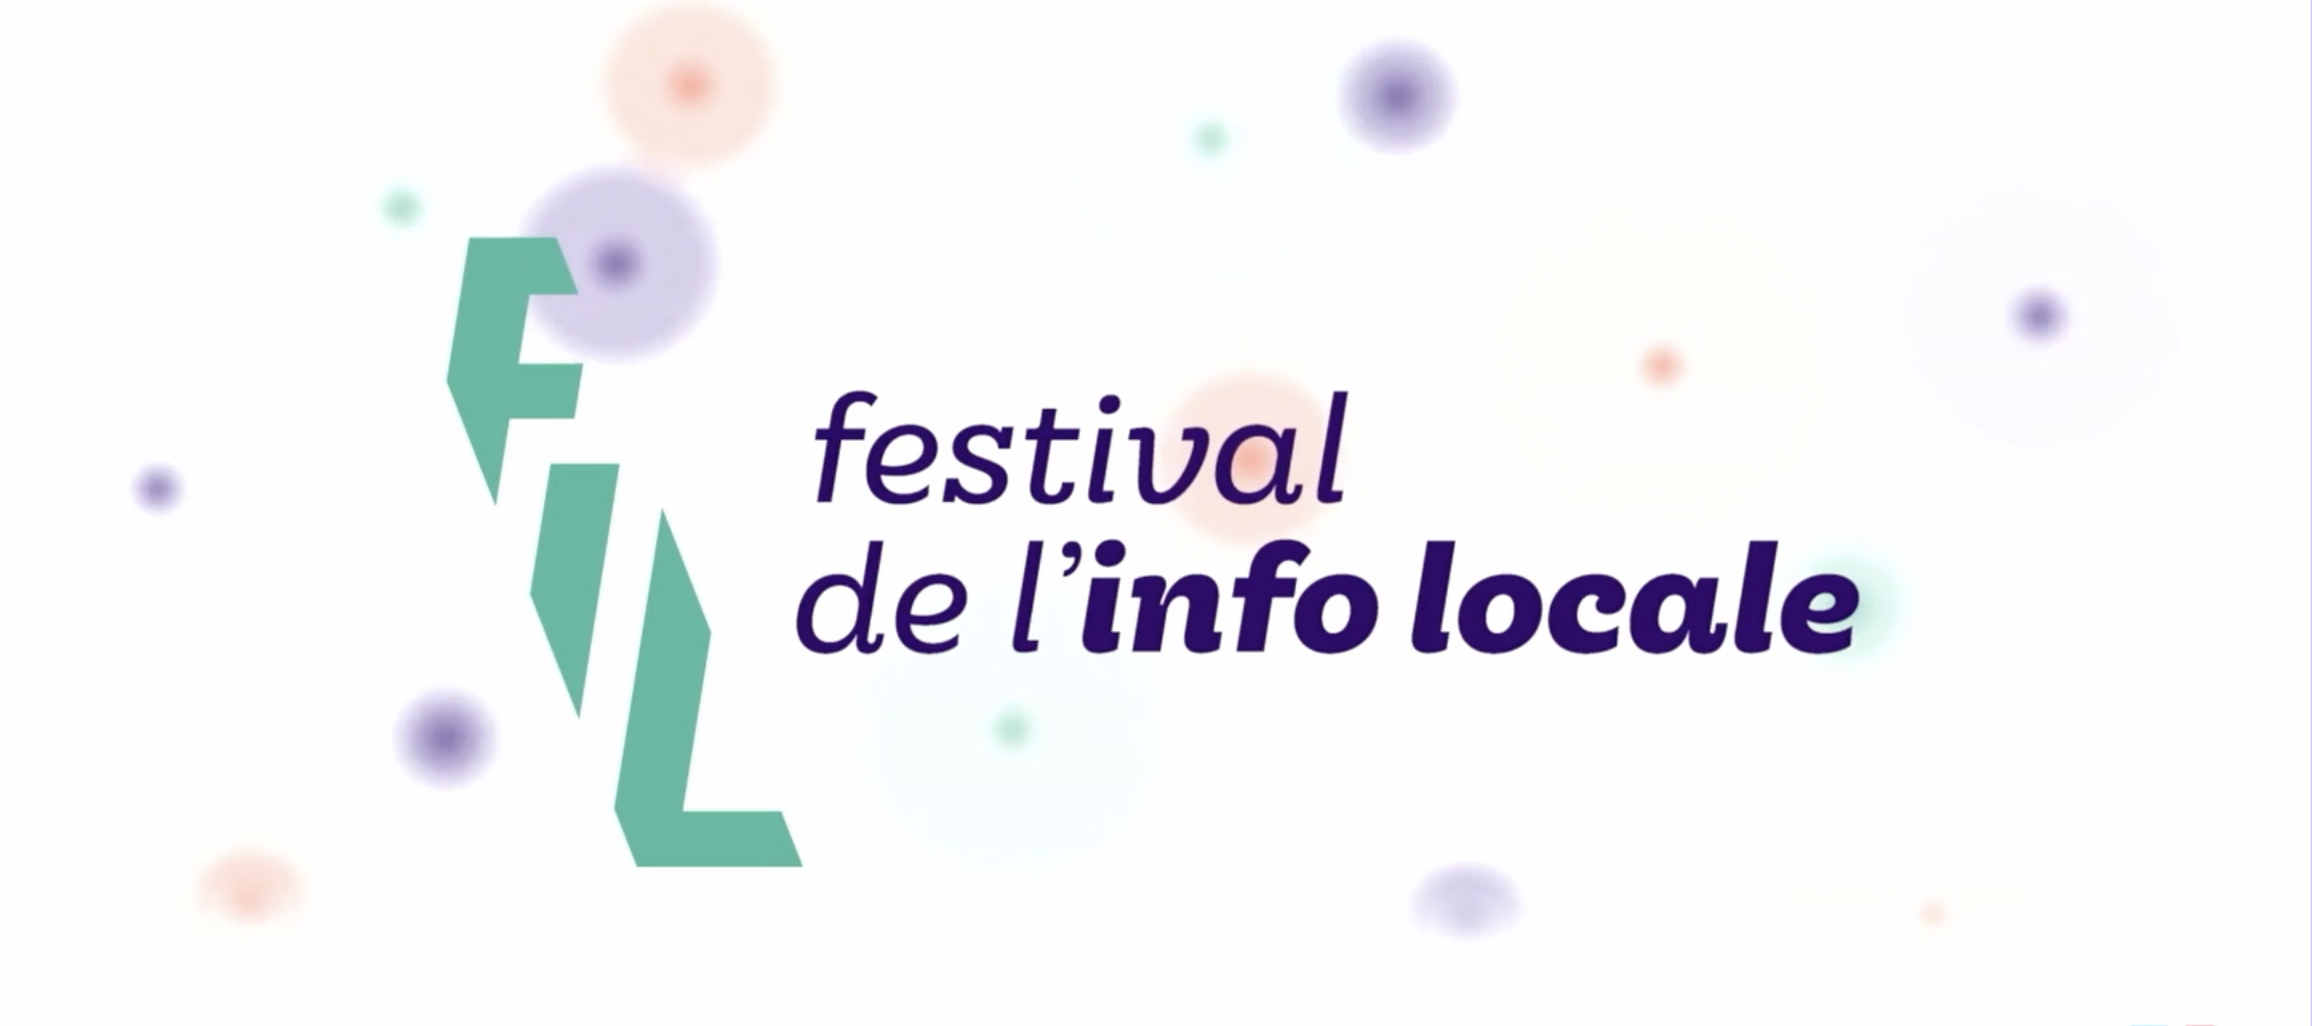 Festival de l'info locale 2020